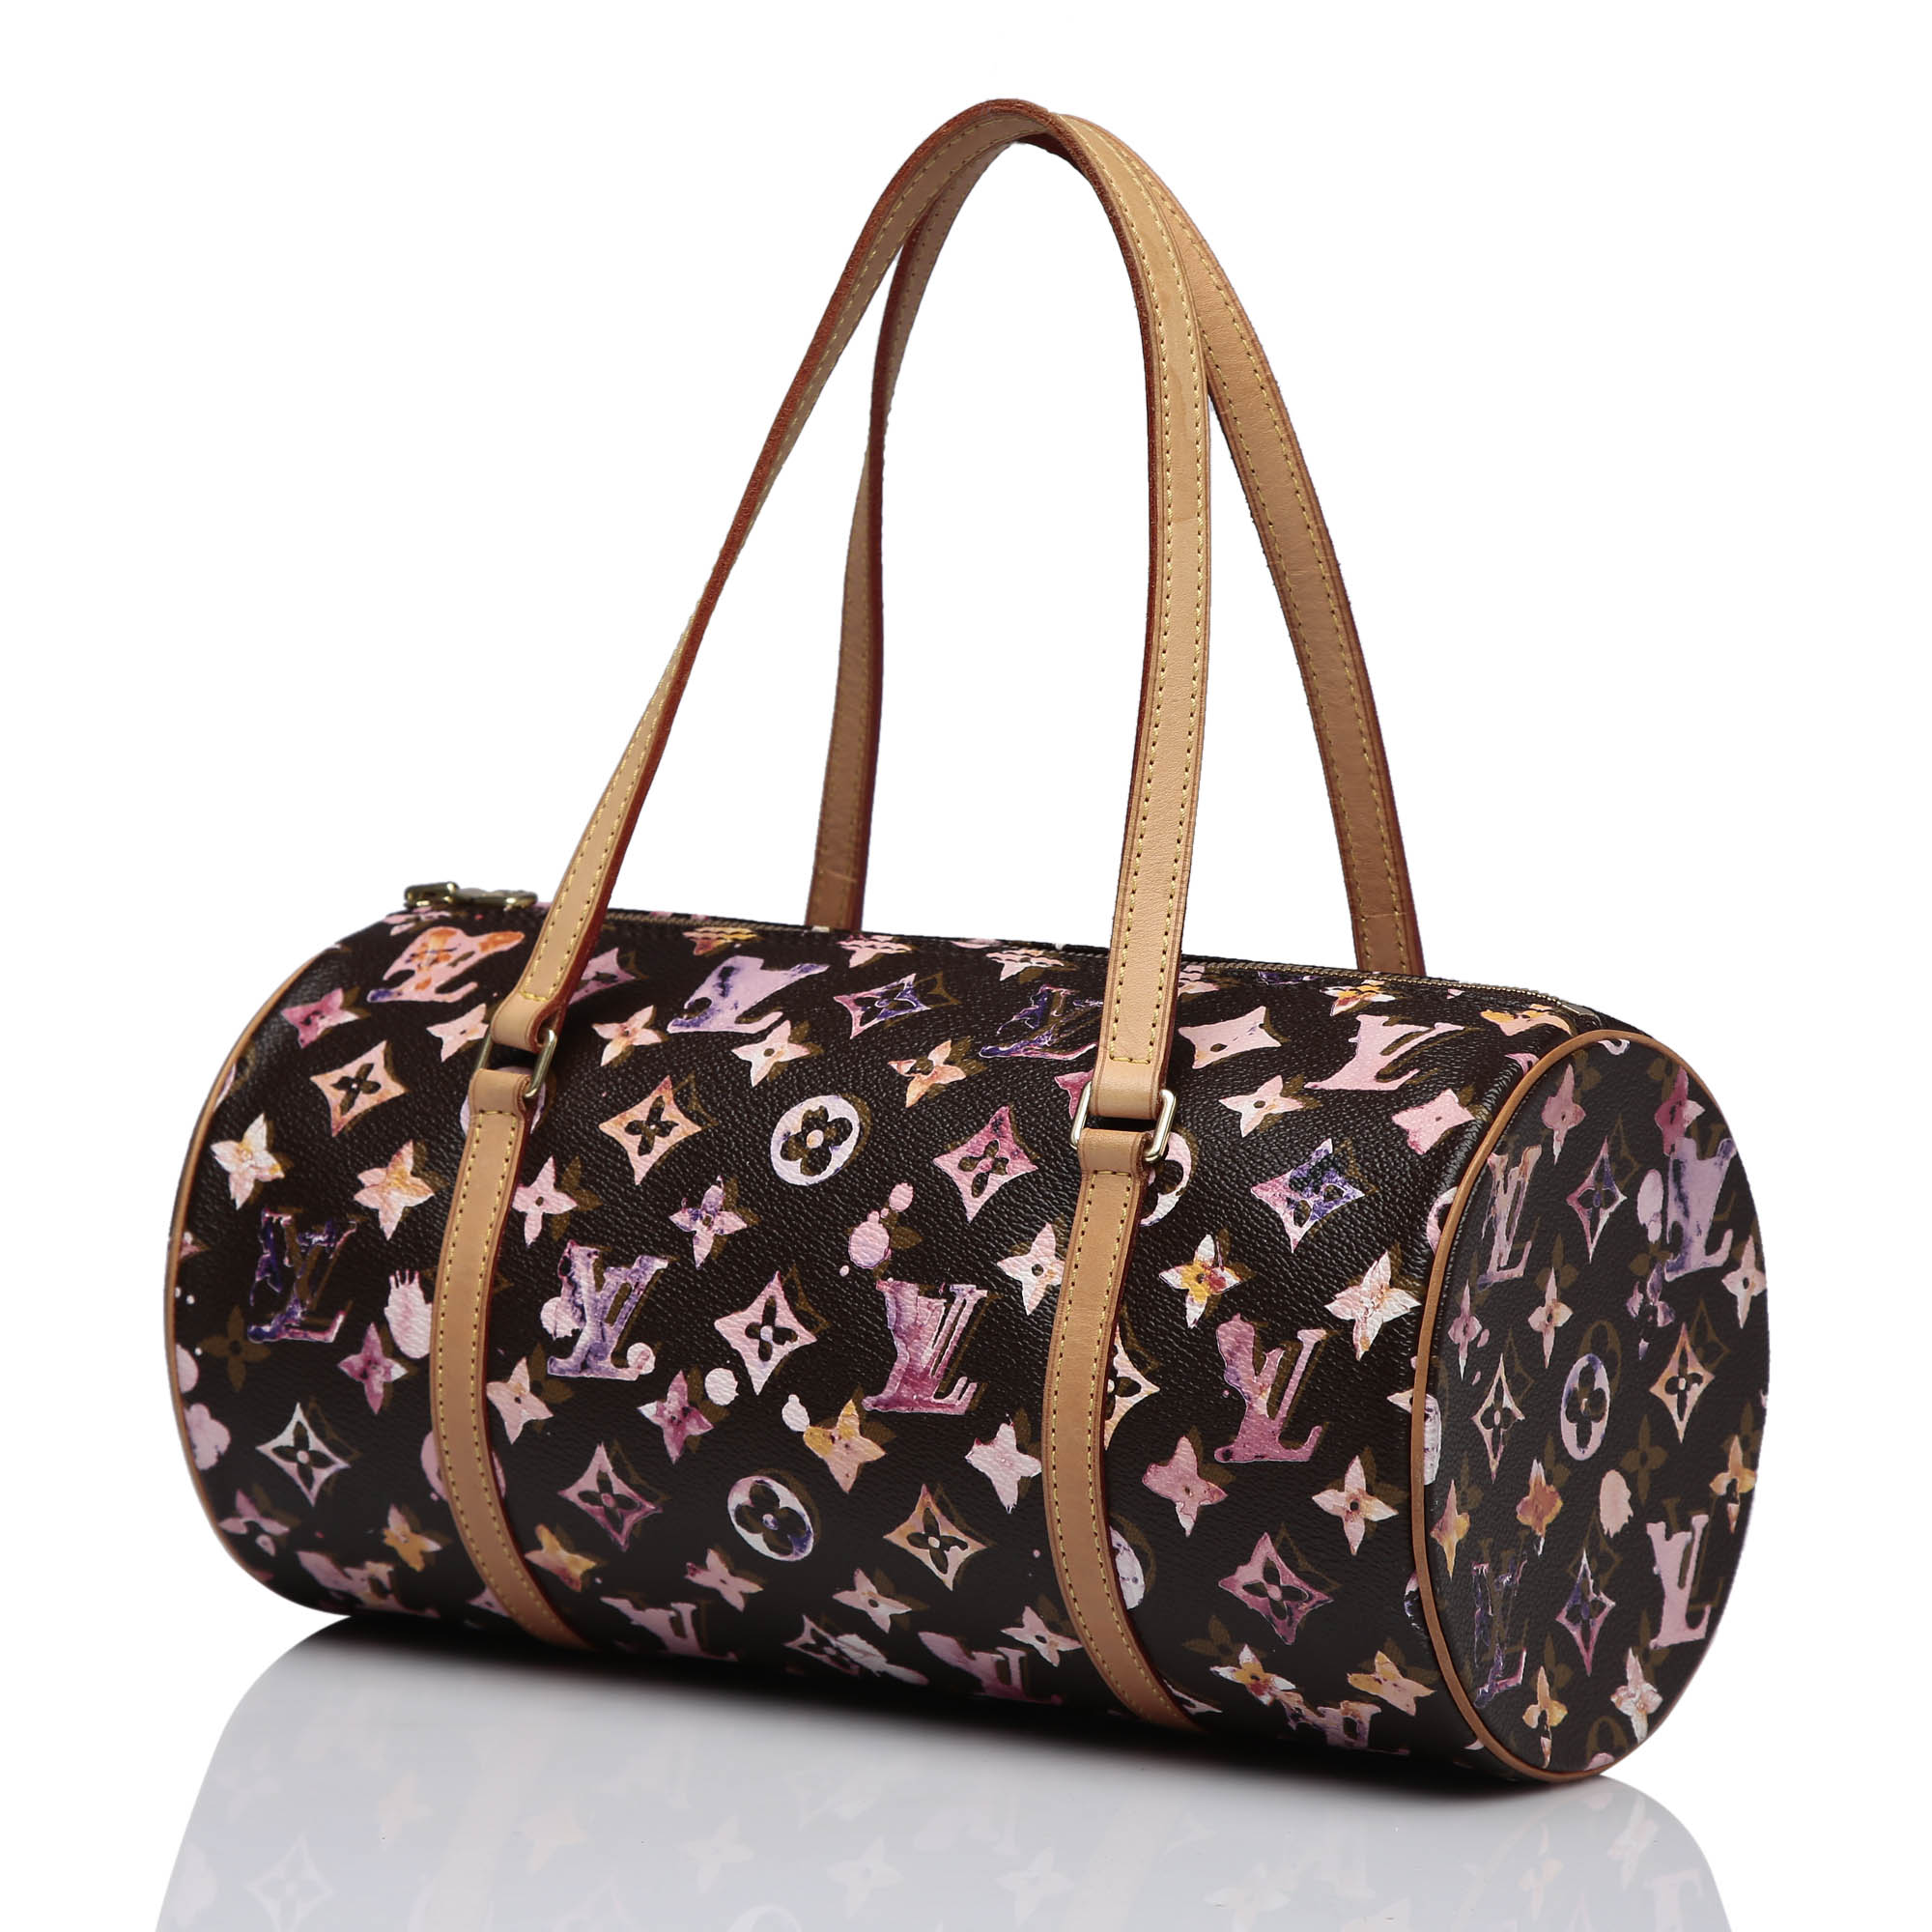 Authentic Louis Vuitton Vintage Handbags 